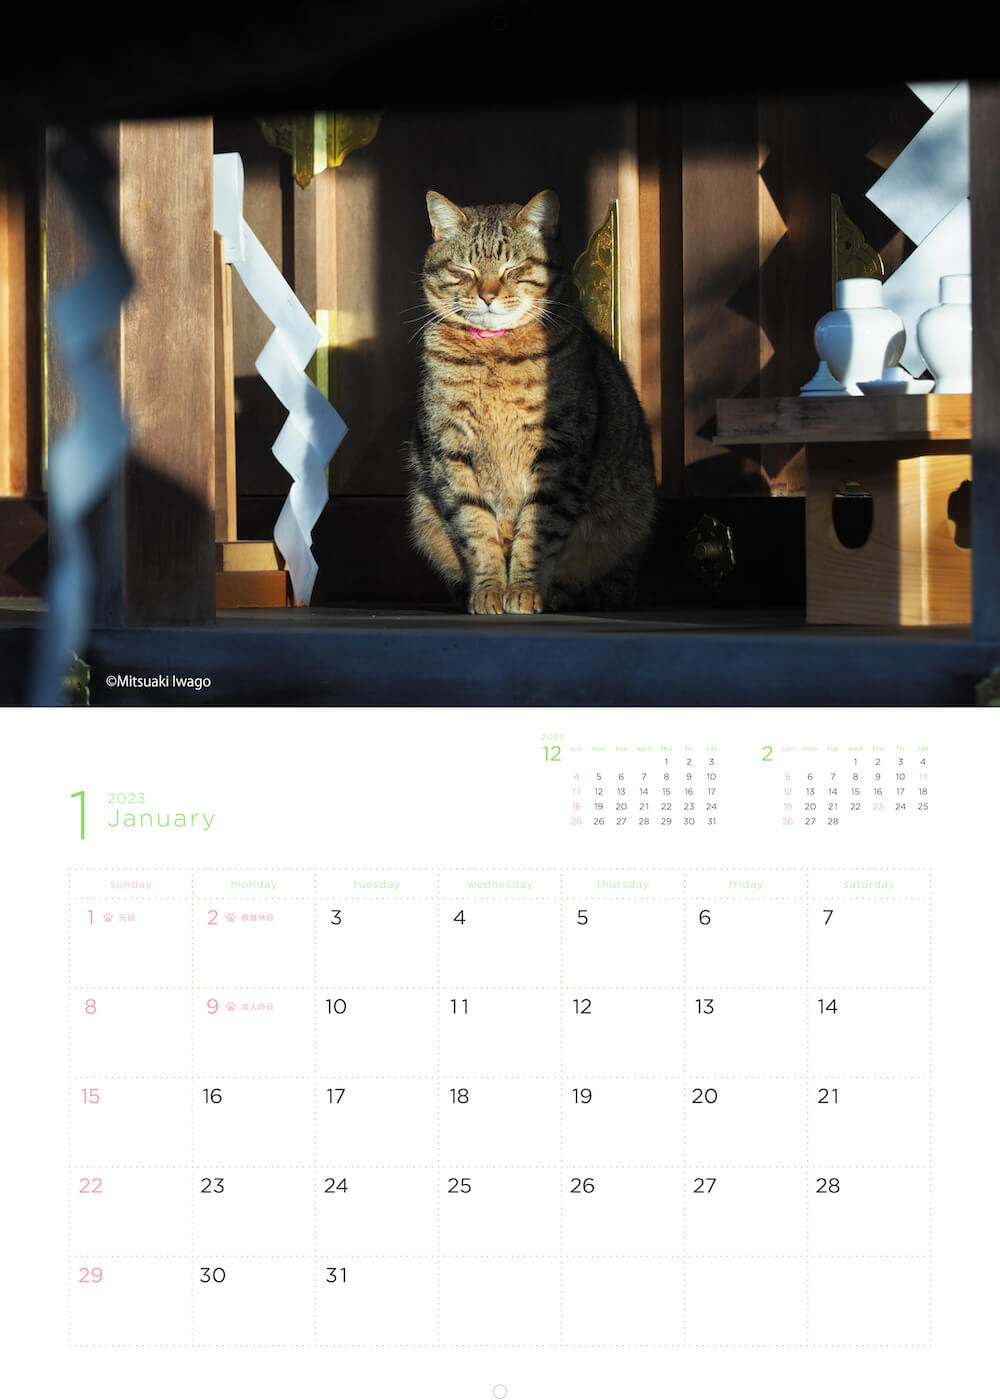 神社の本殿で日向ぼっこをする猫 by 岩合光昭カレンダー